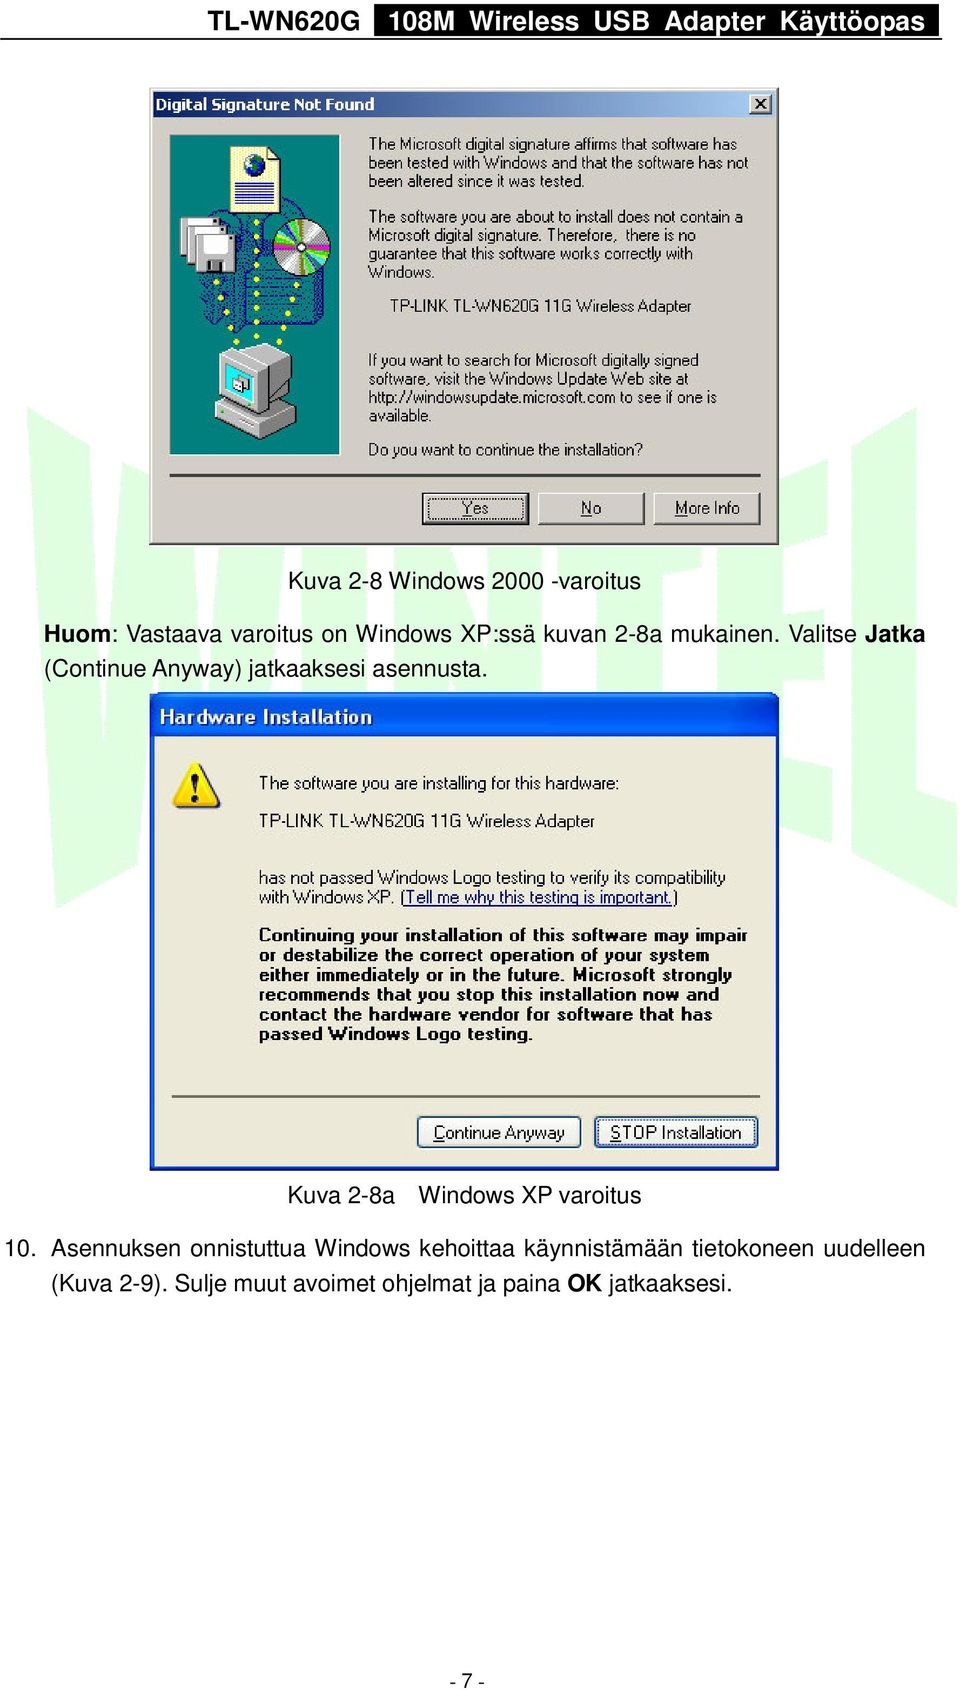 Kuva 2-8a Windows XP varoitus 10.